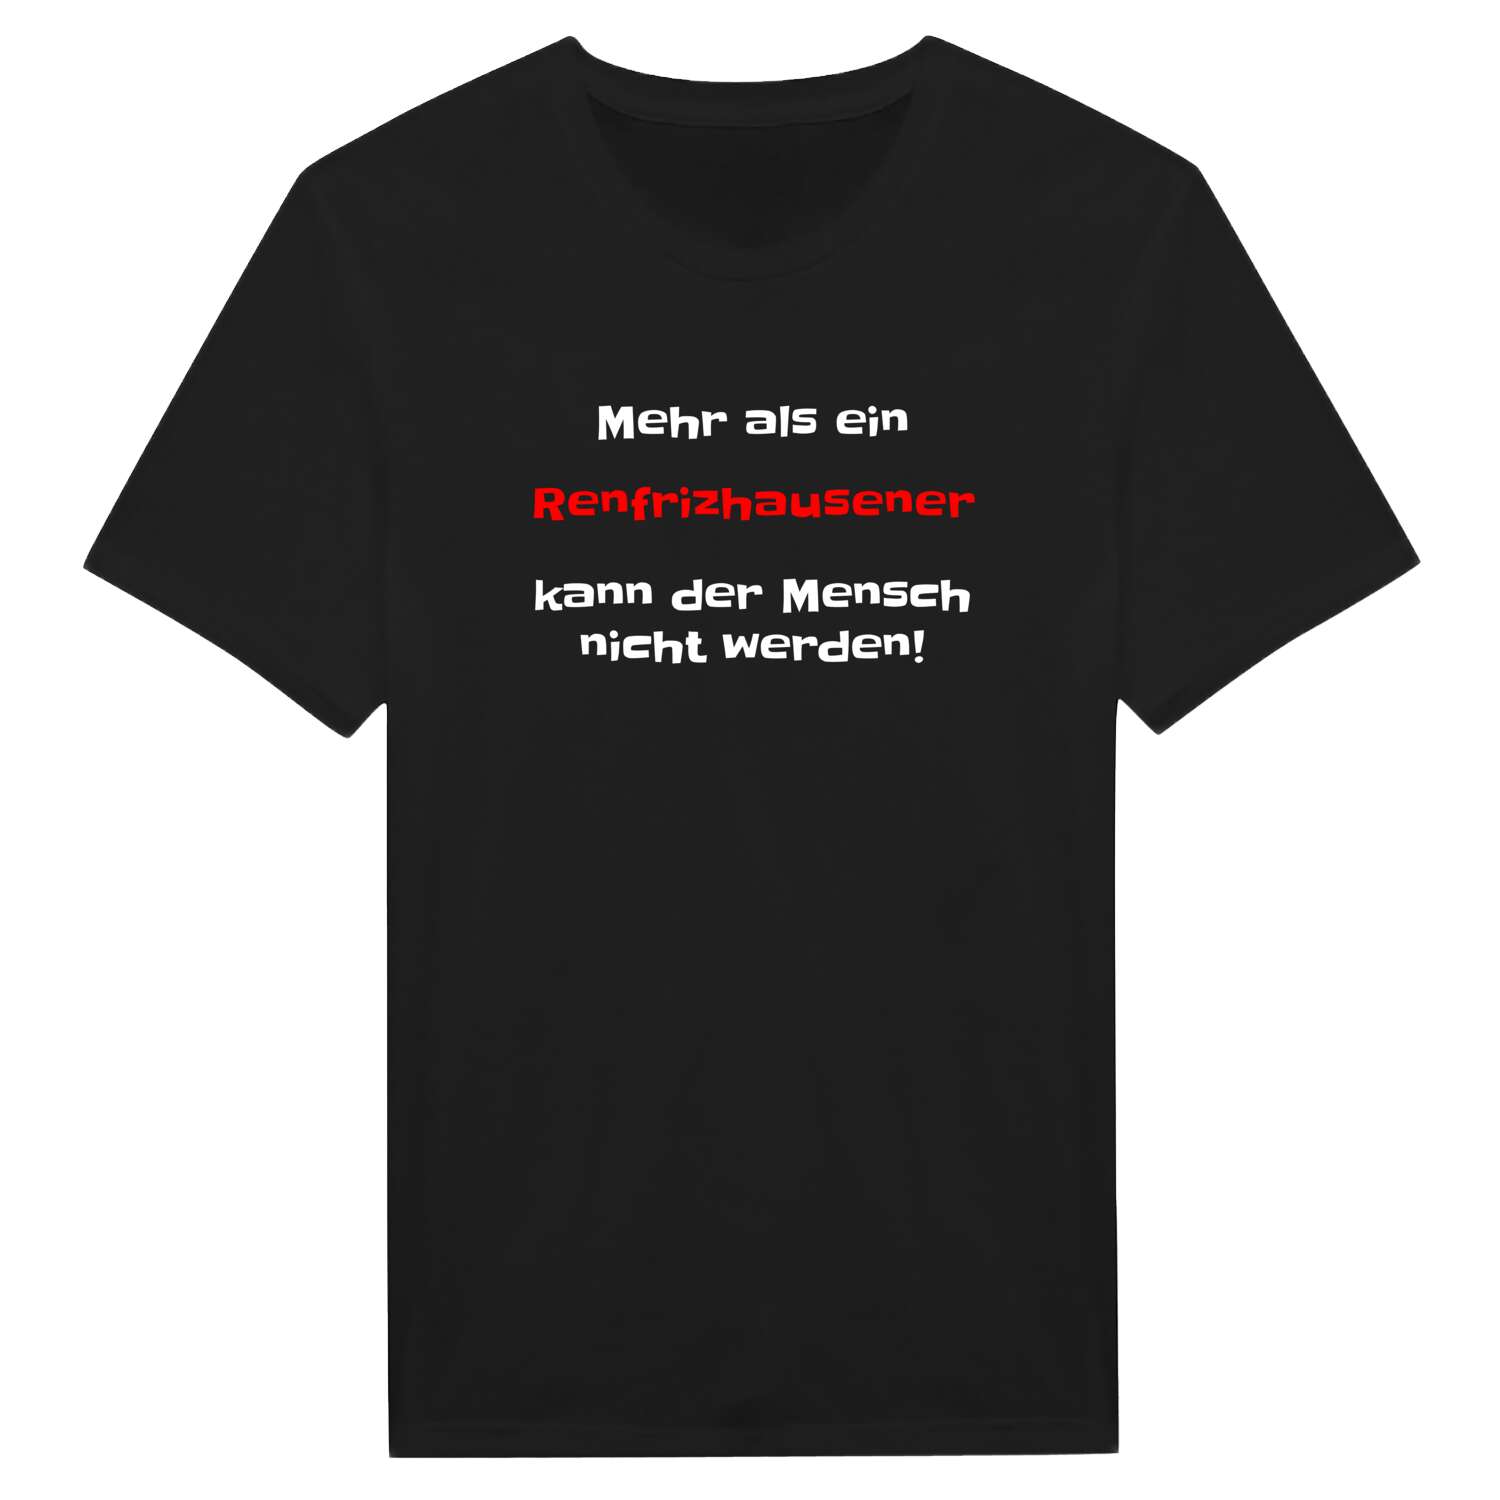 Renfrizhausen T-Shirt »Mehr als ein«